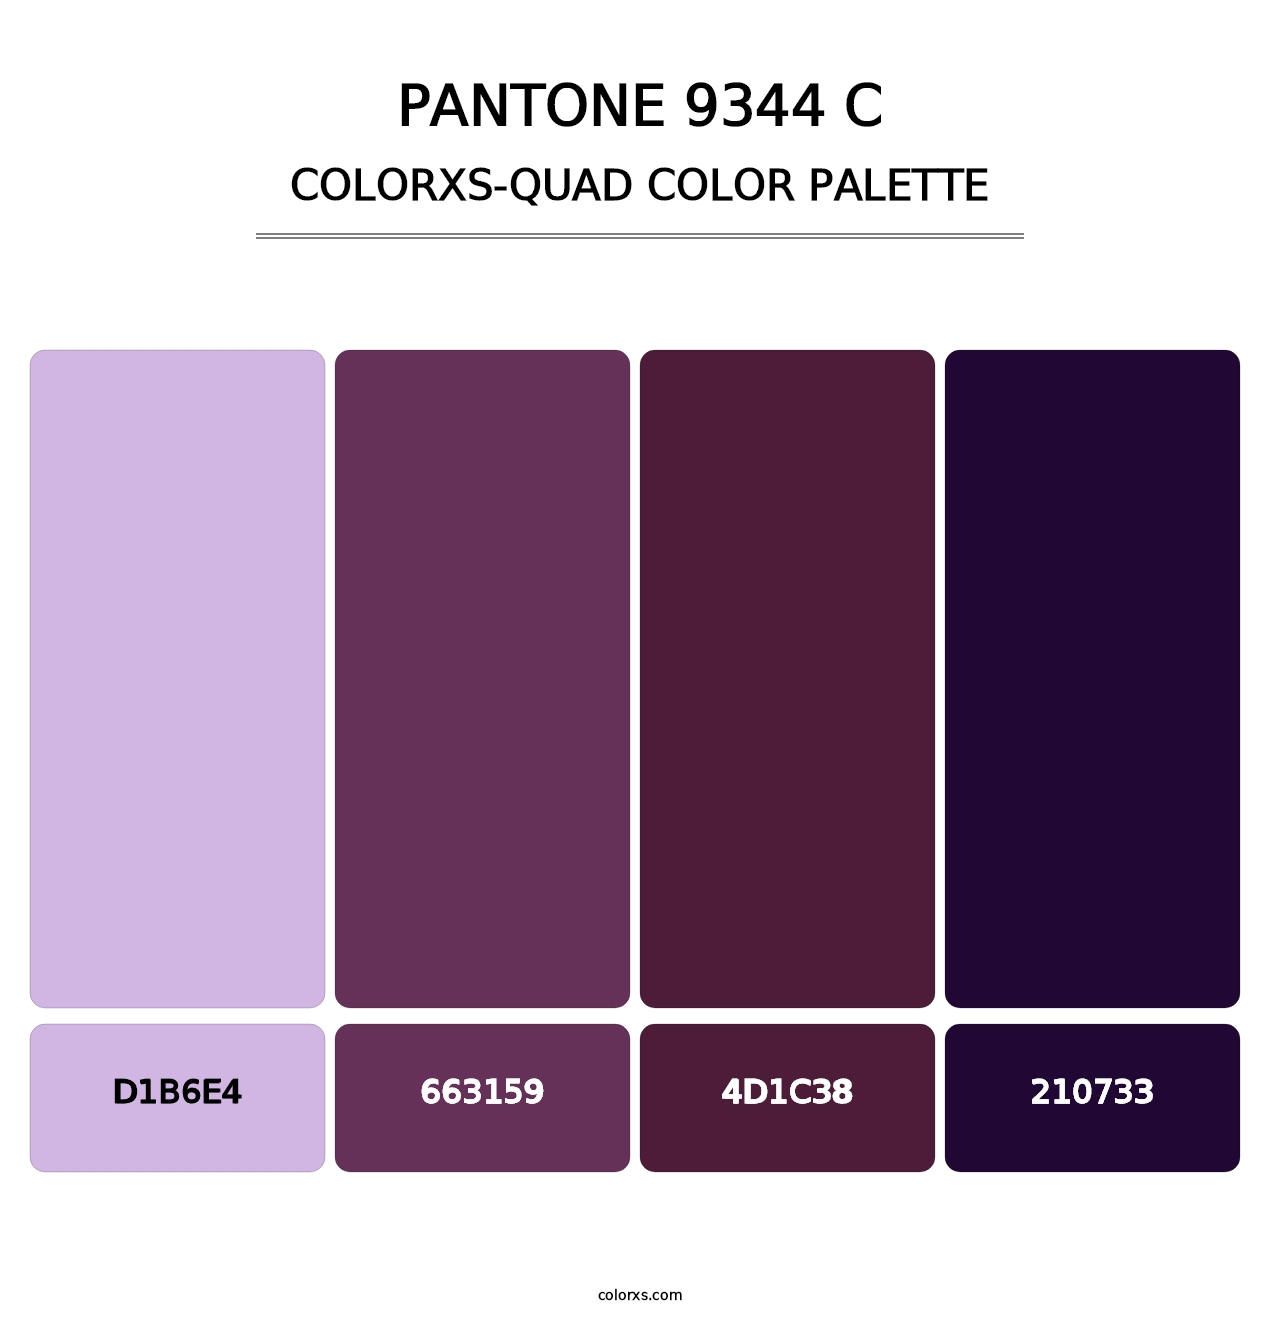 PANTONE 9344 C - Colorxs Quad Palette